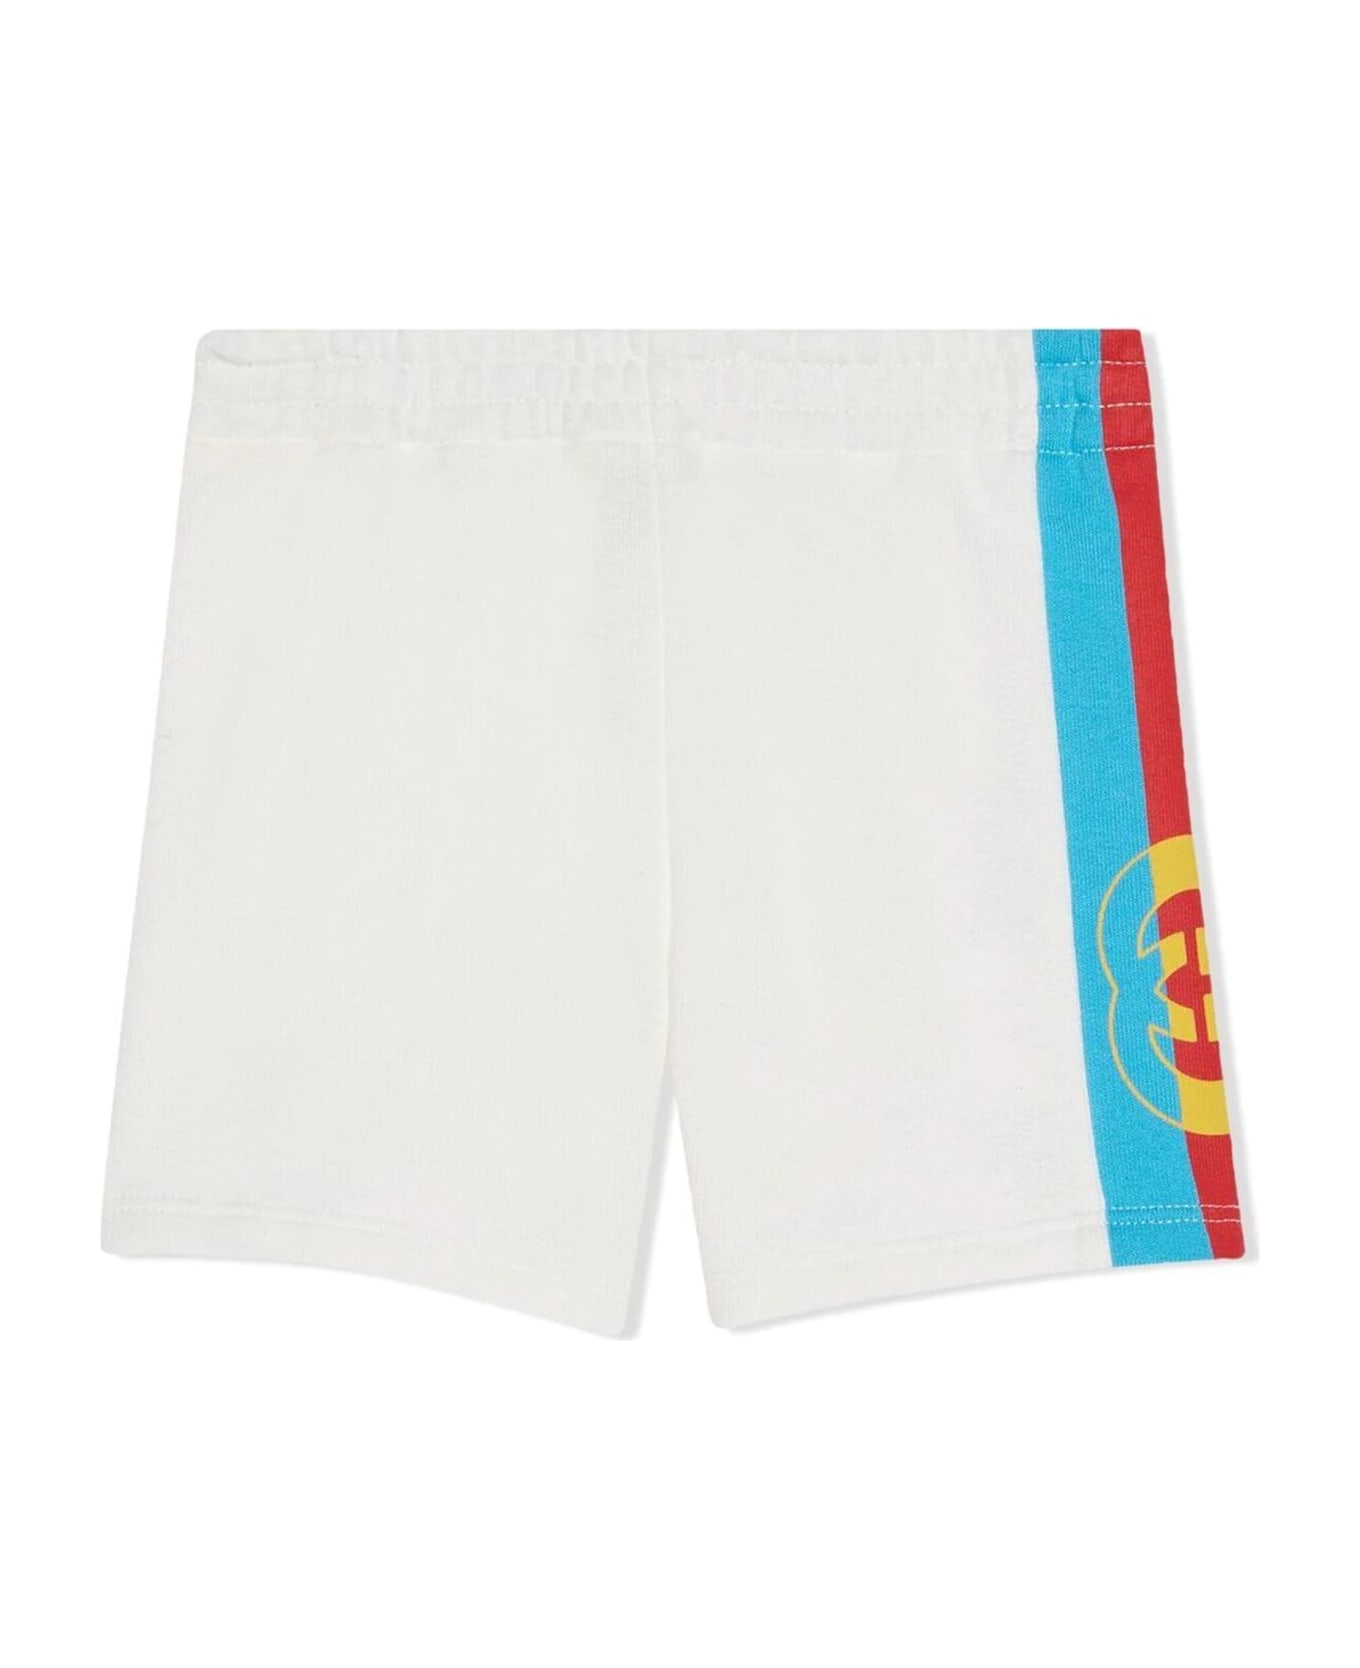 Gucci White Cotton Shorts - Multicolor